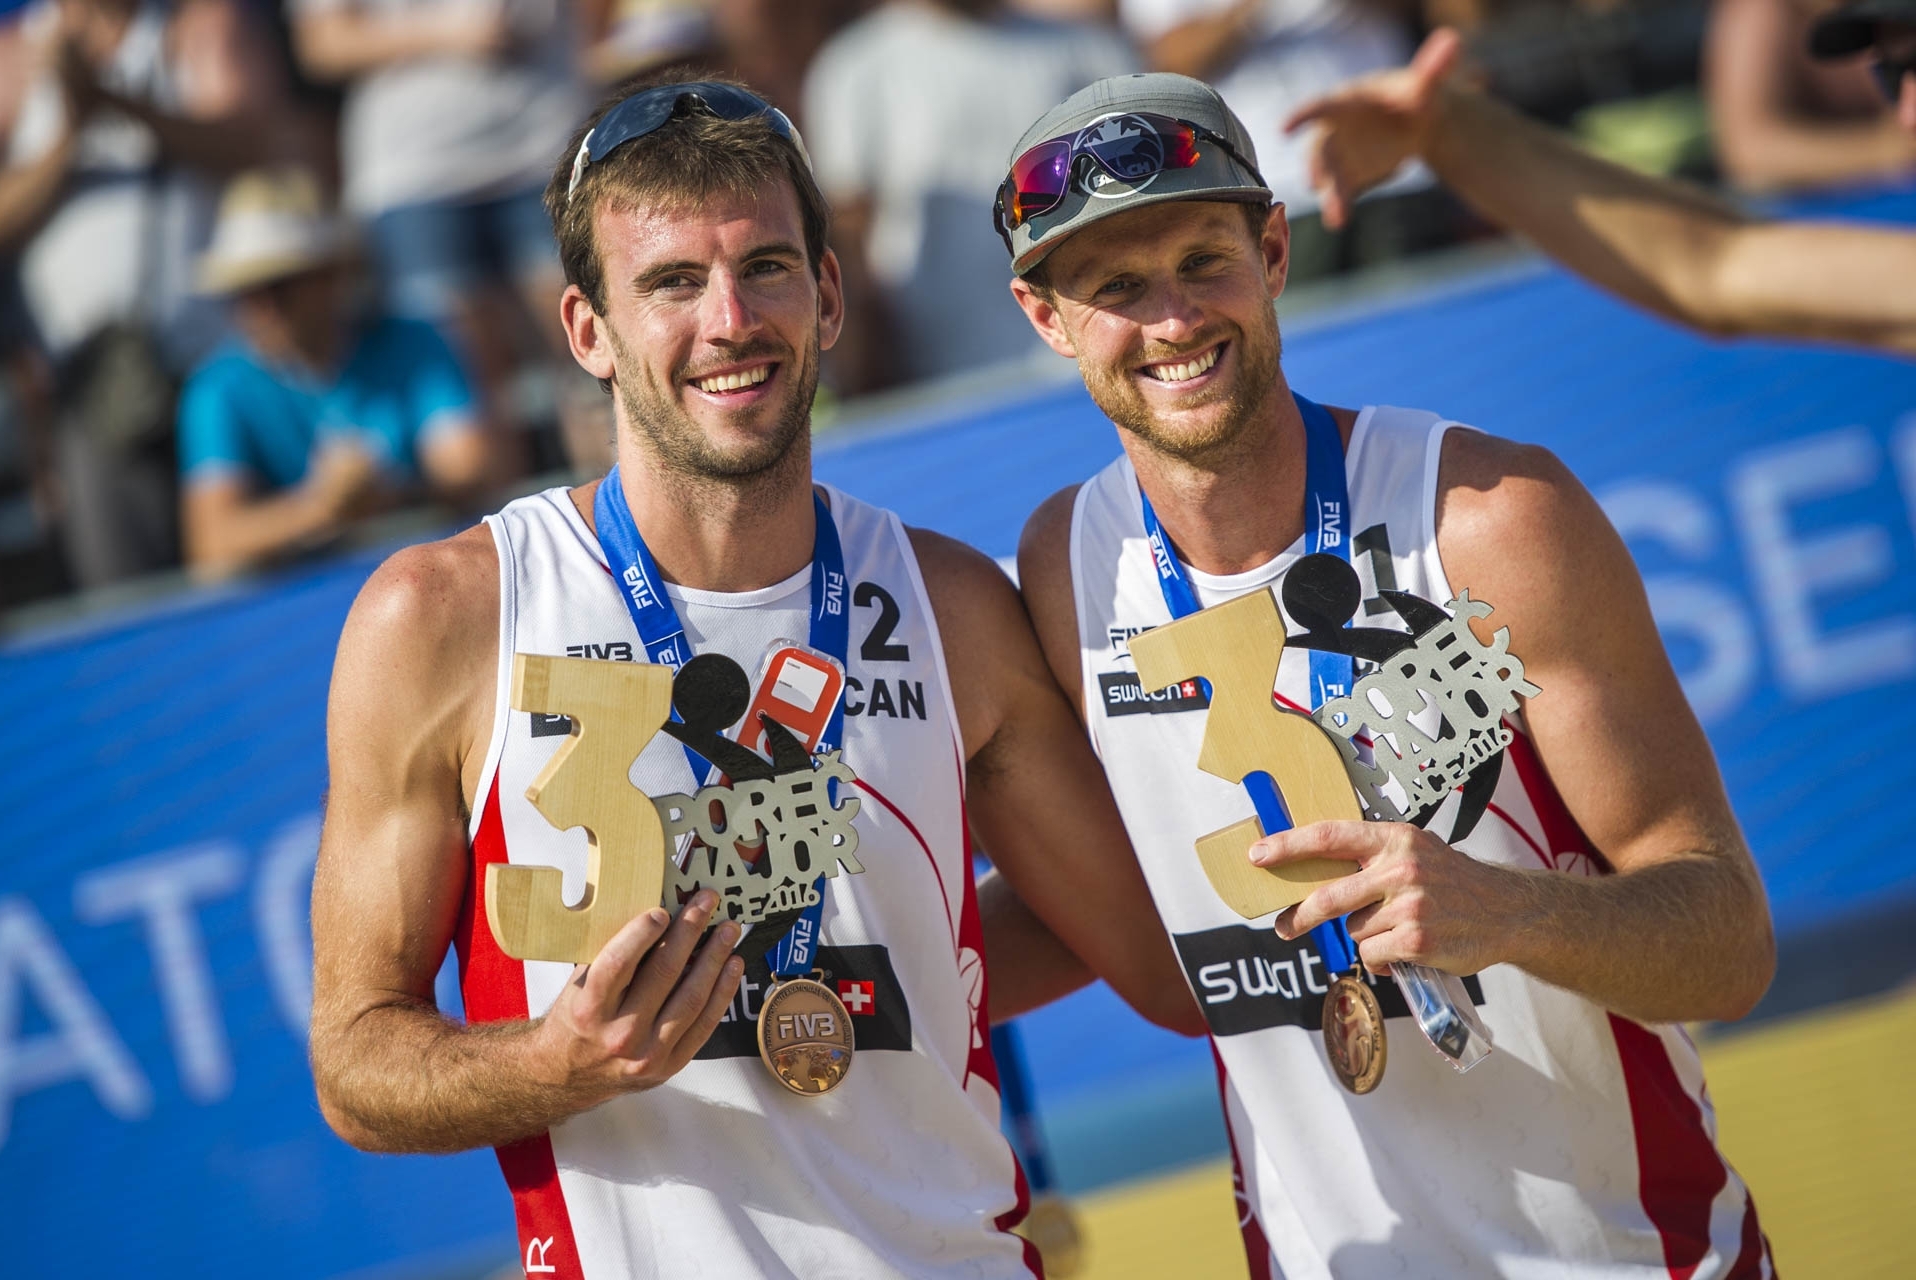 Ben (left) and partner Chaim Schalk won bronze at the Poreč Major 12 months ago.